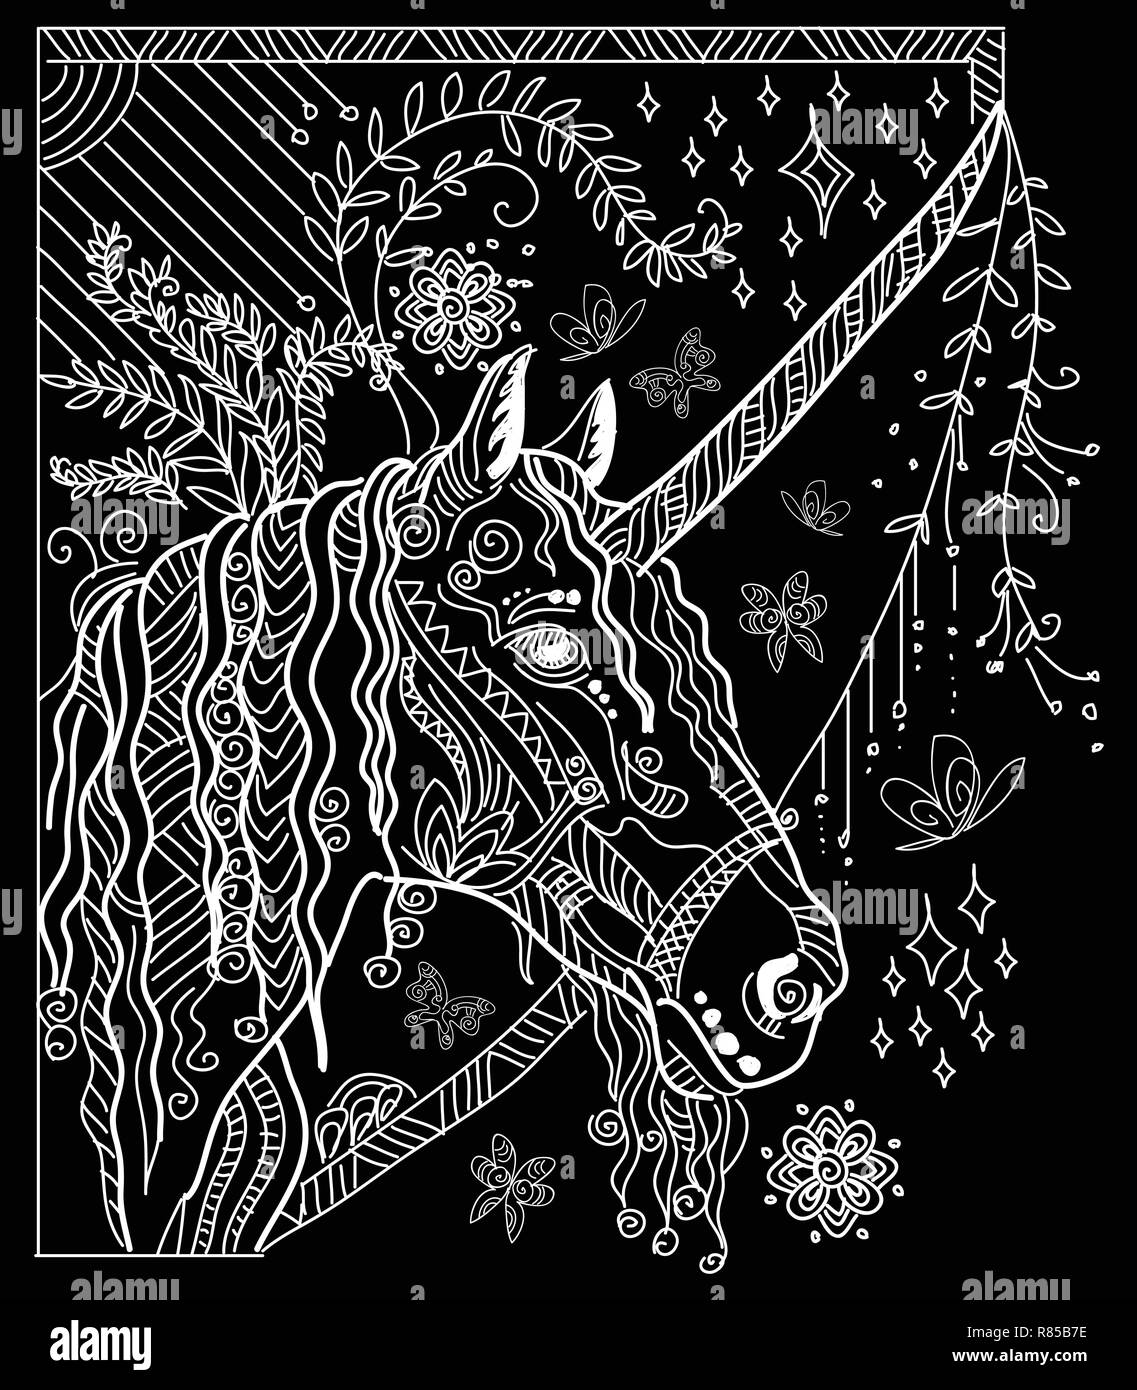 Vettore di disegno a mano illustrazione zentangle unicorn in colore bianco isolato su sfondo nero. Doodle unicorn illustrazione con elementi d'impianto. Colore Illustrazione Vettoriale